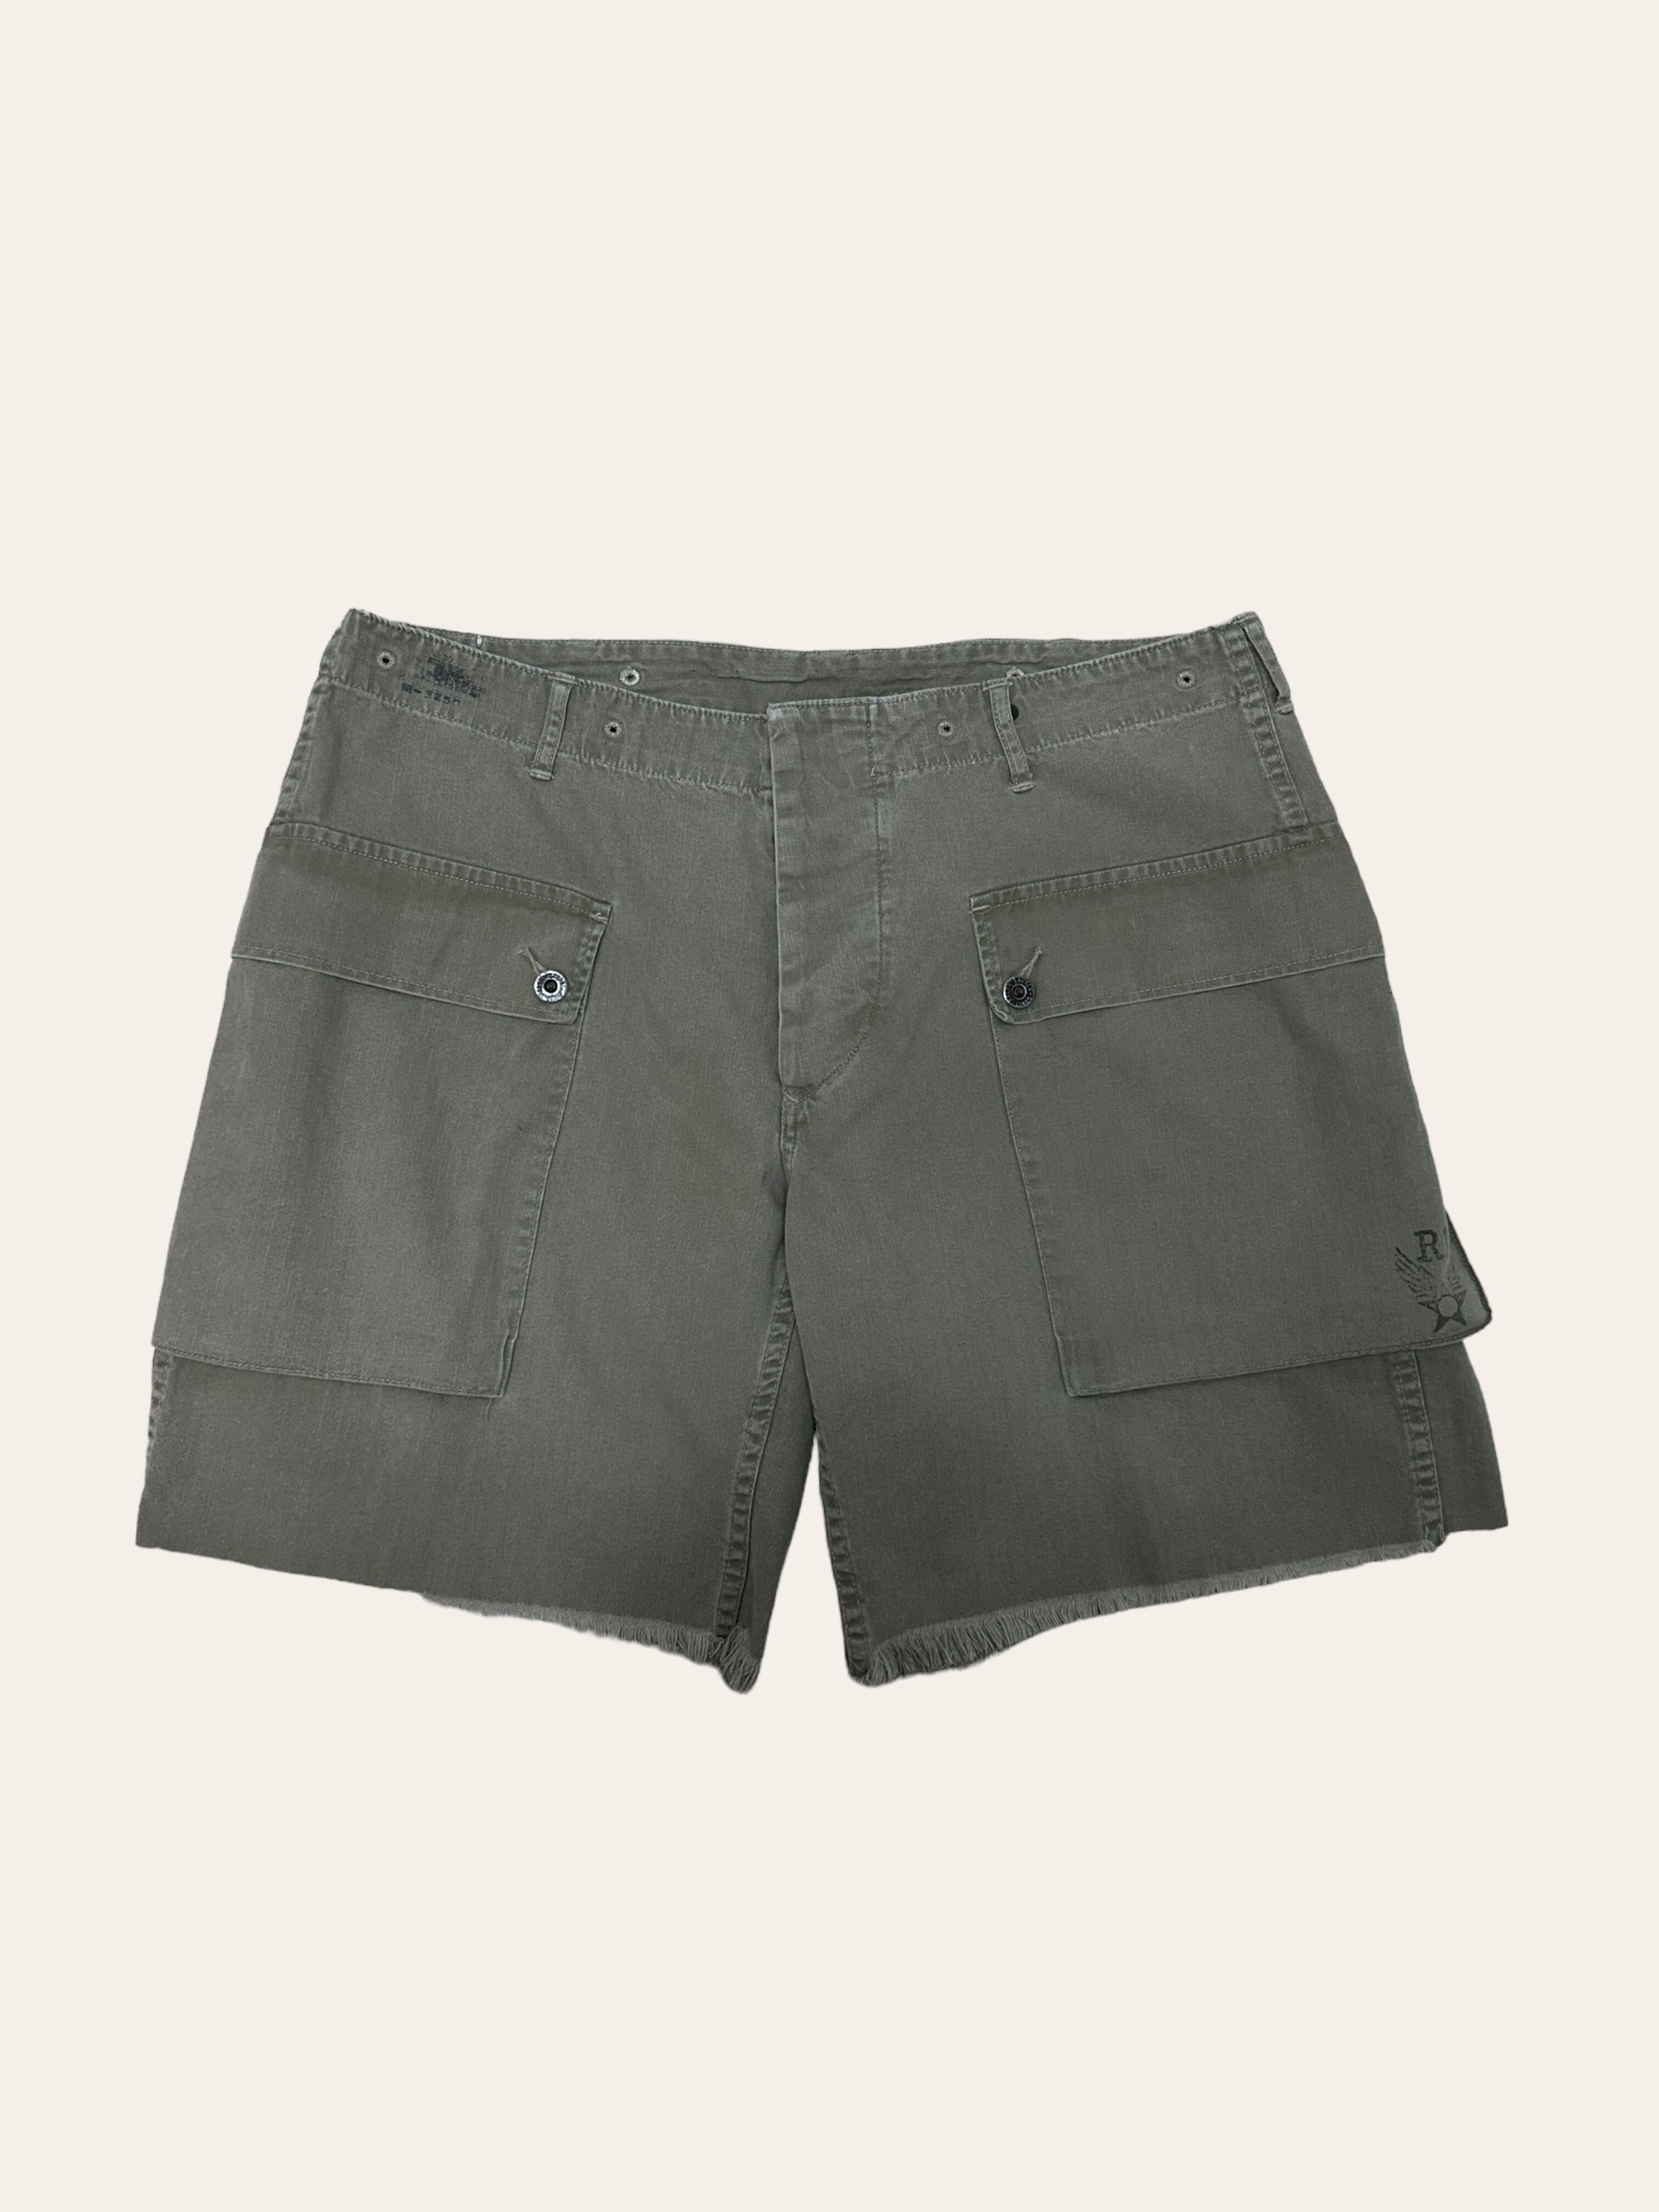 Polo ralph lauren khaki color HBT P-44 military shorts 36